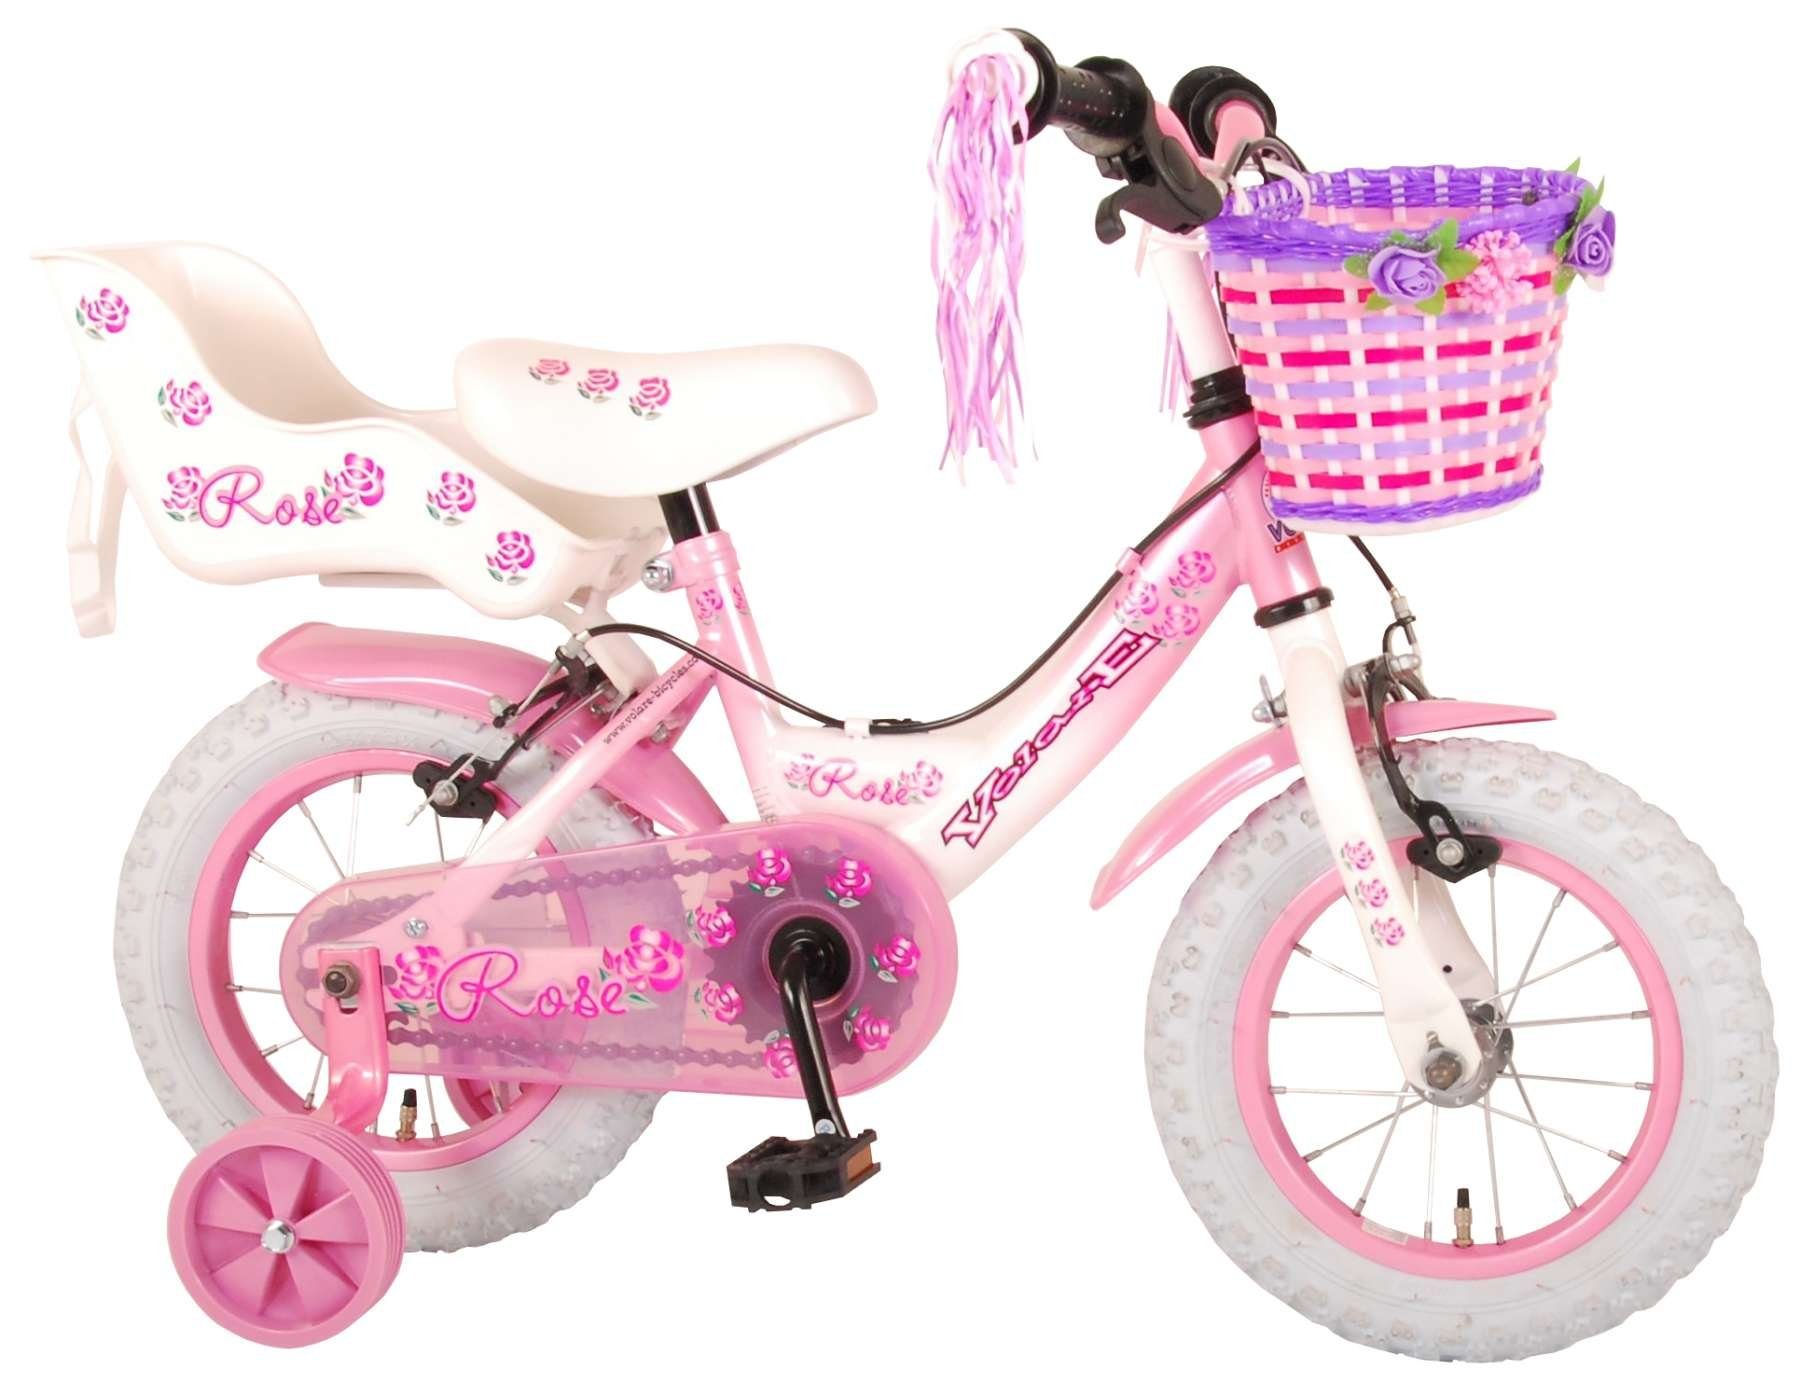 LeNoSa Kinderfahrrad Volare 12 Zoll Fahrrad für Mädchen - Pink - 2  Handbremsen • Fahrradkorb • Puppensitz • Alter 3+